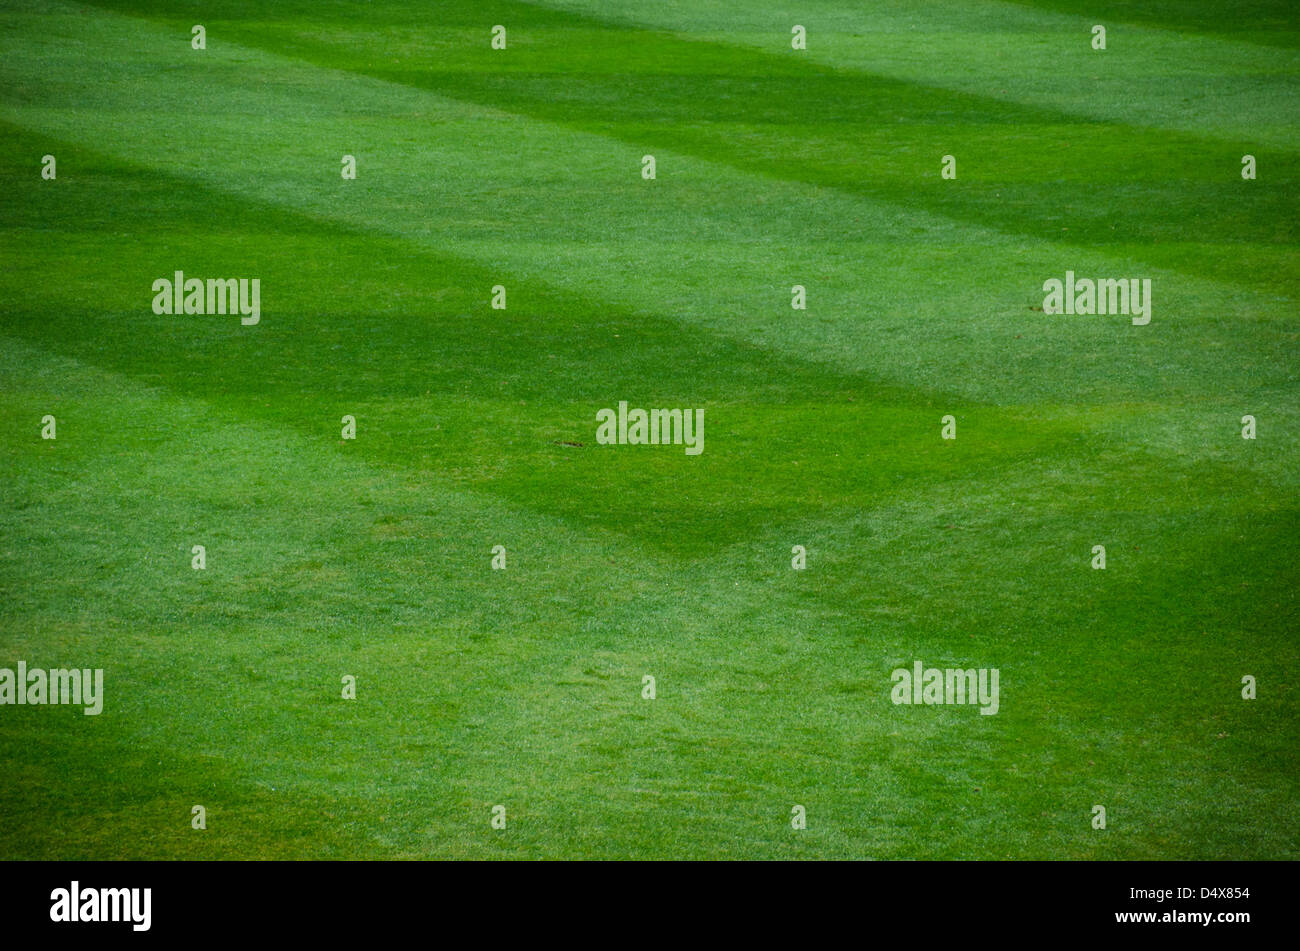 Résumé fond texture de la structure de l'herbe verte damée d'un terrain de baseball professionnel Banque D'Images